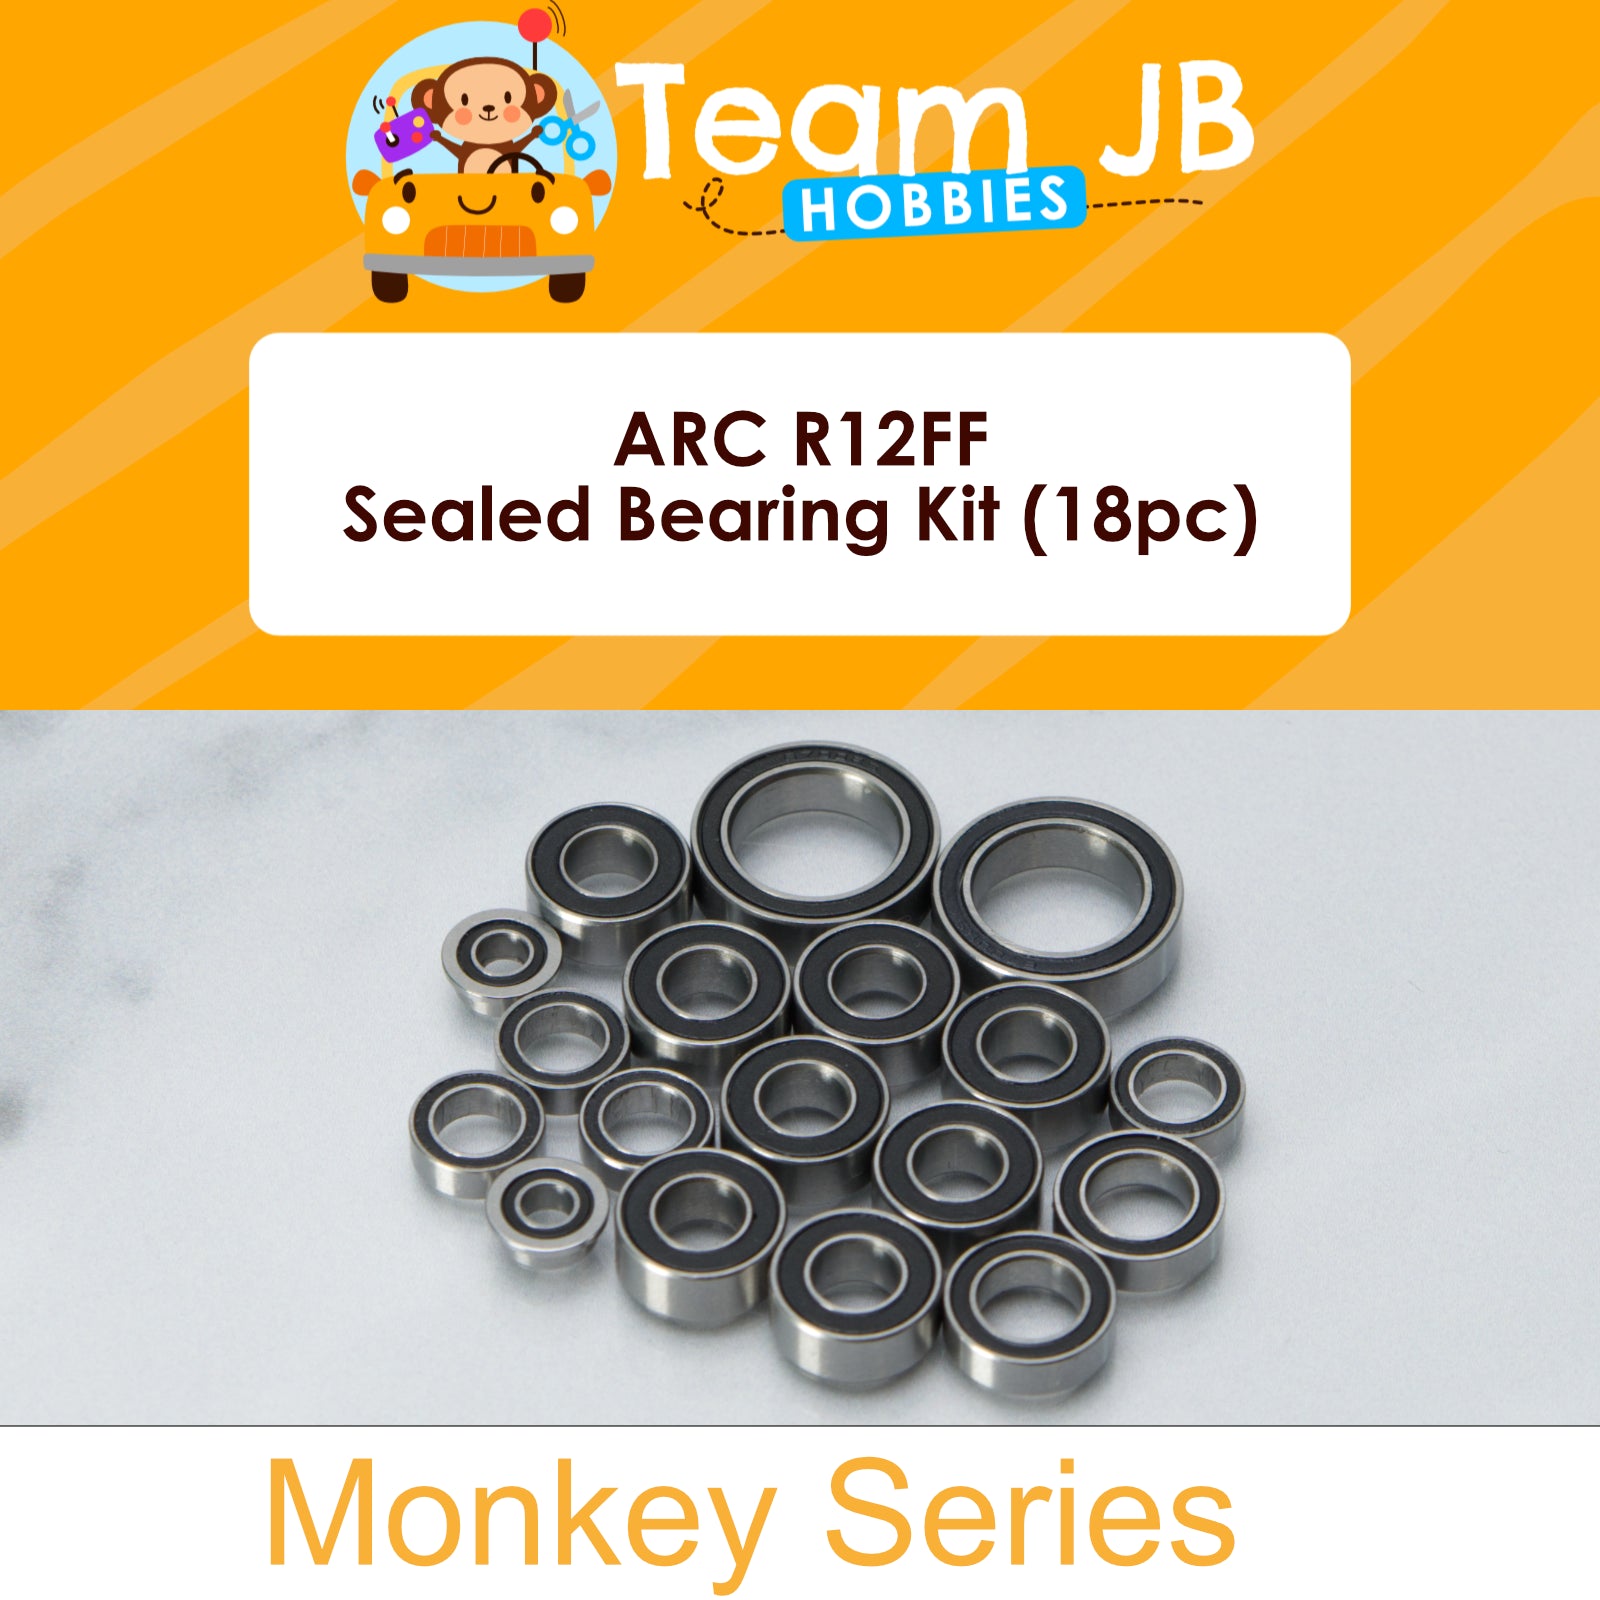 ARC R12FF - Sealed Bearing Kit